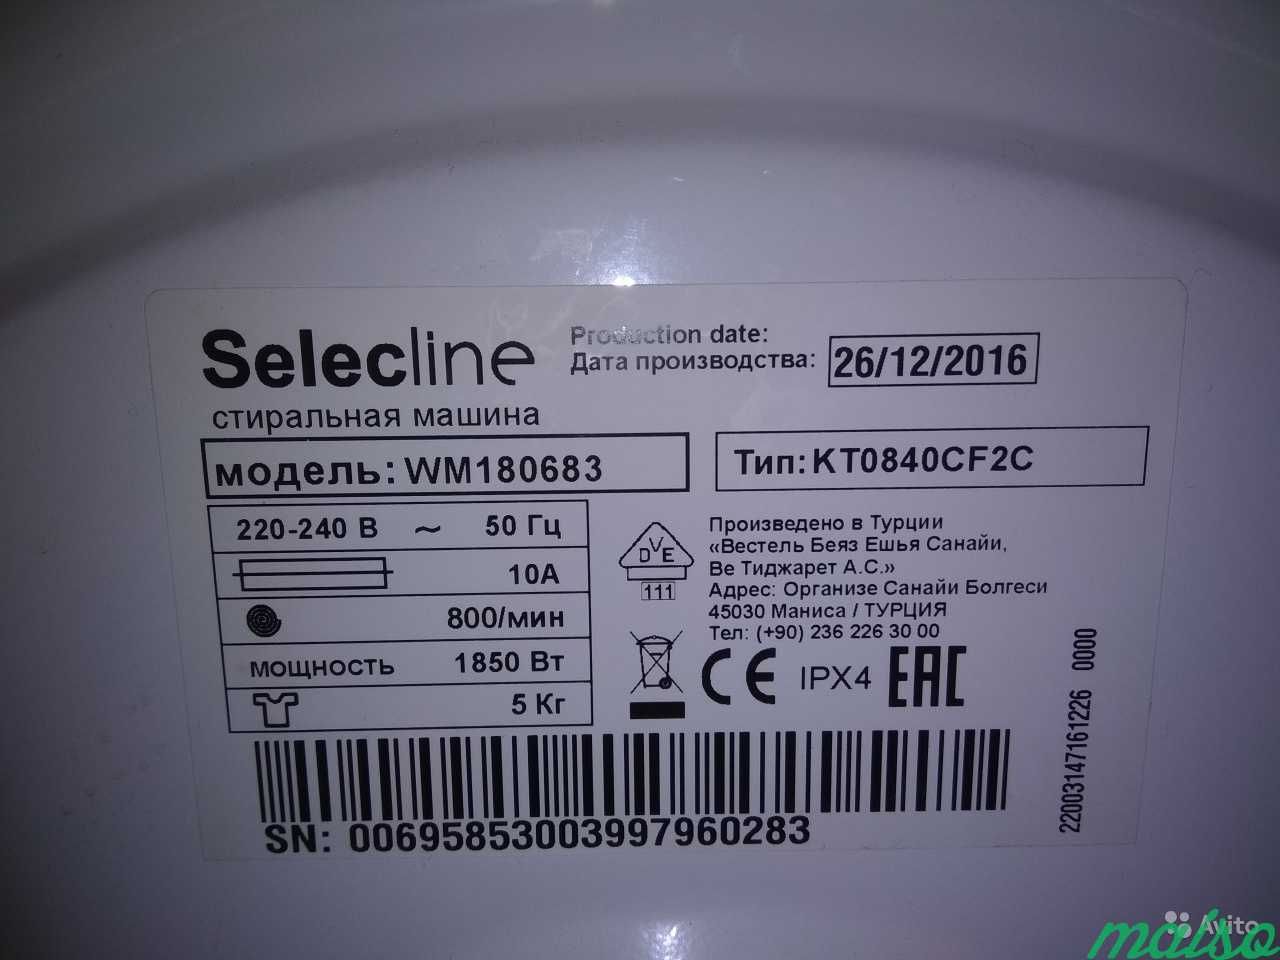 Продажа стиральной машины Selecline WM180683 в Москве. Фото 1